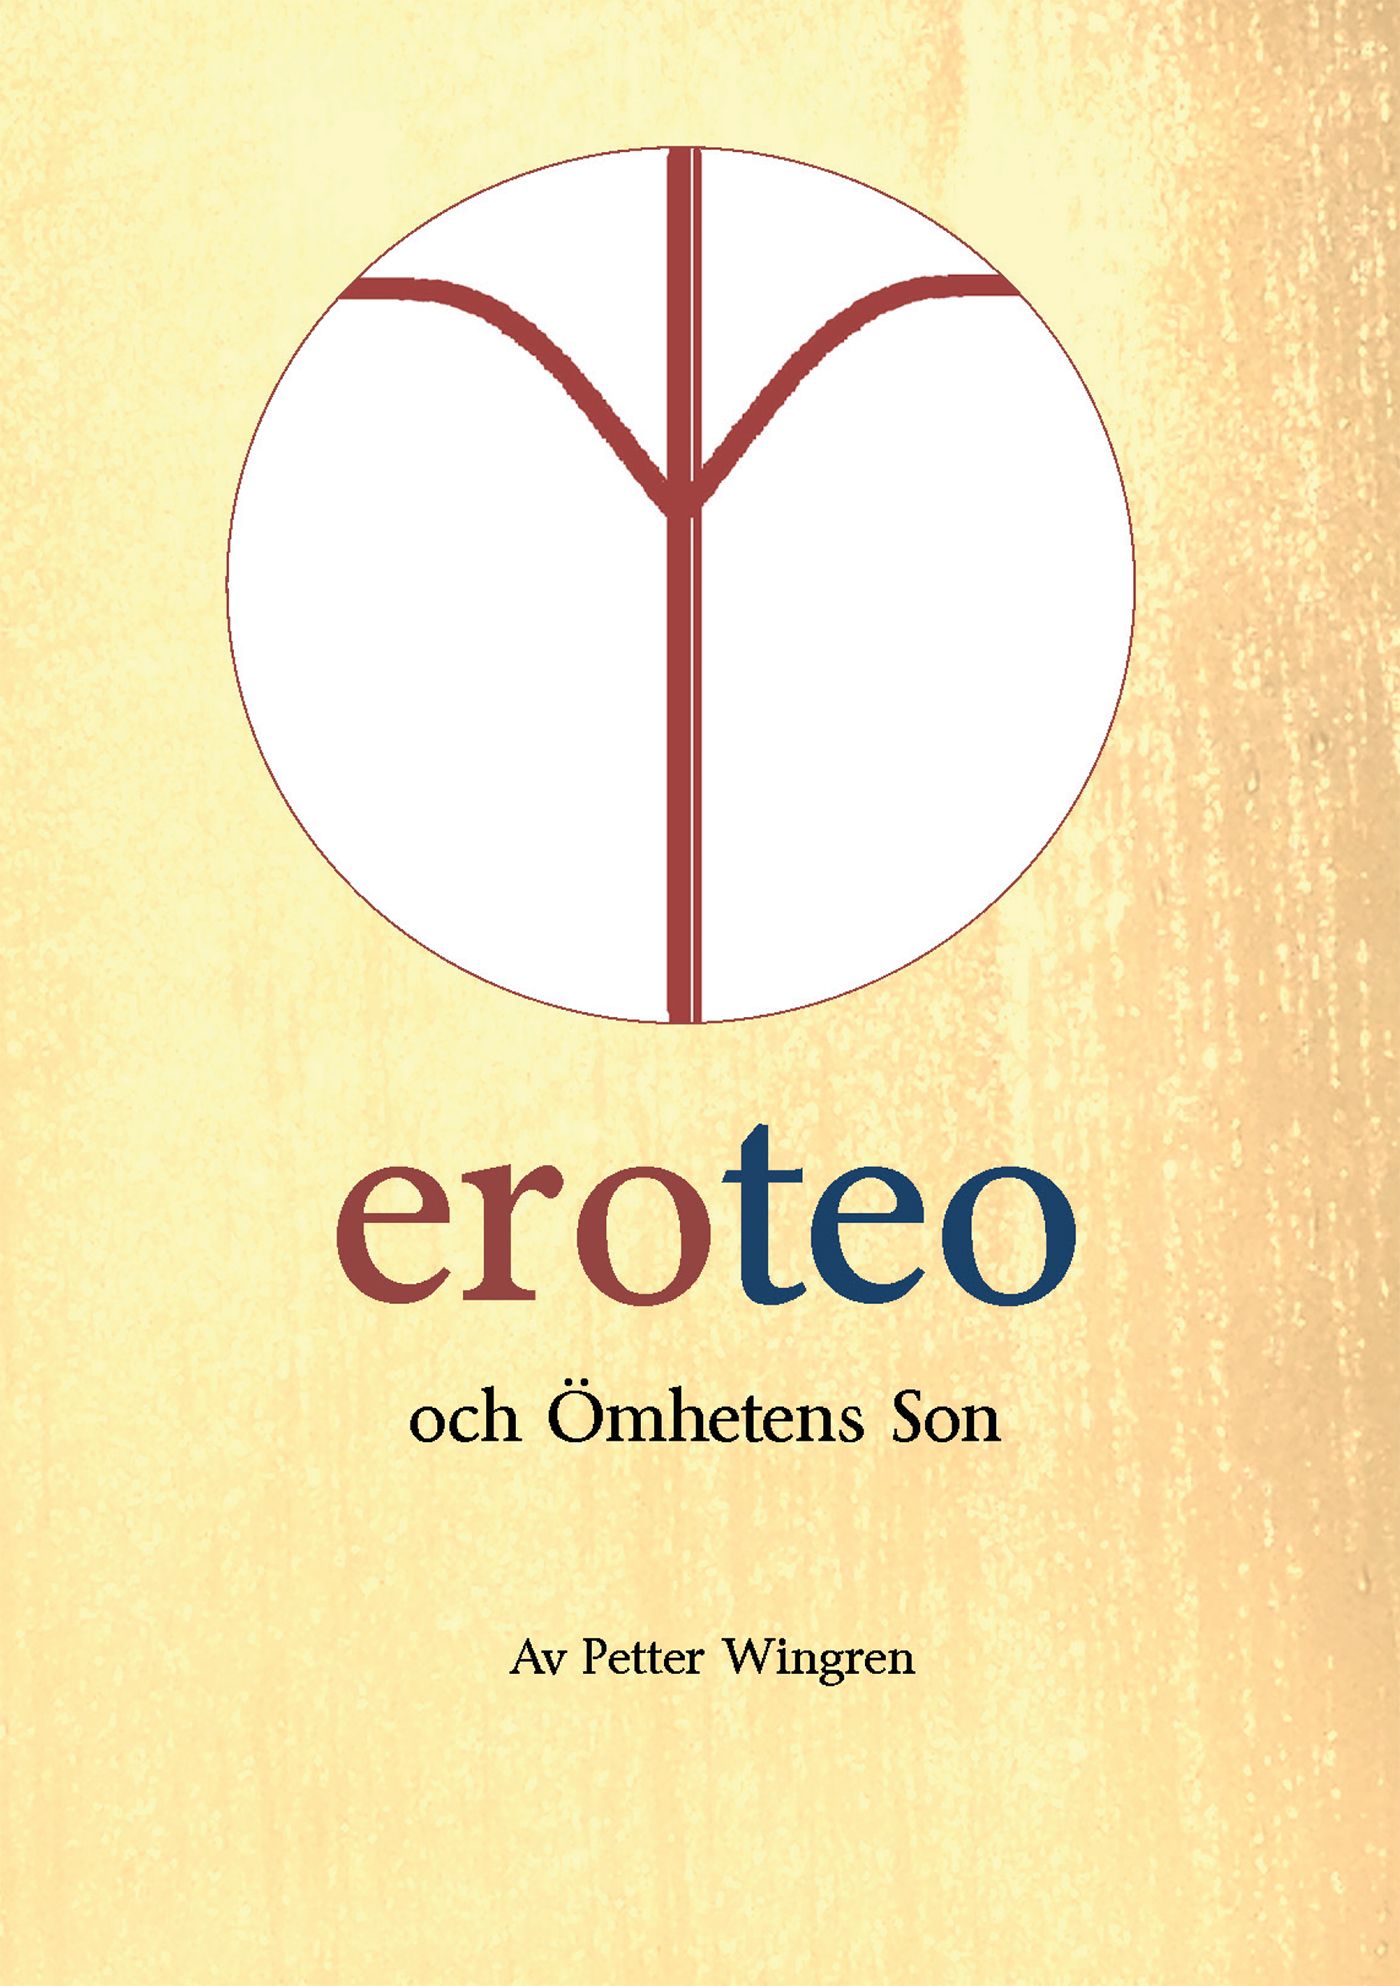 eroteo och ömhetens son, e-bok av Petter Wingren